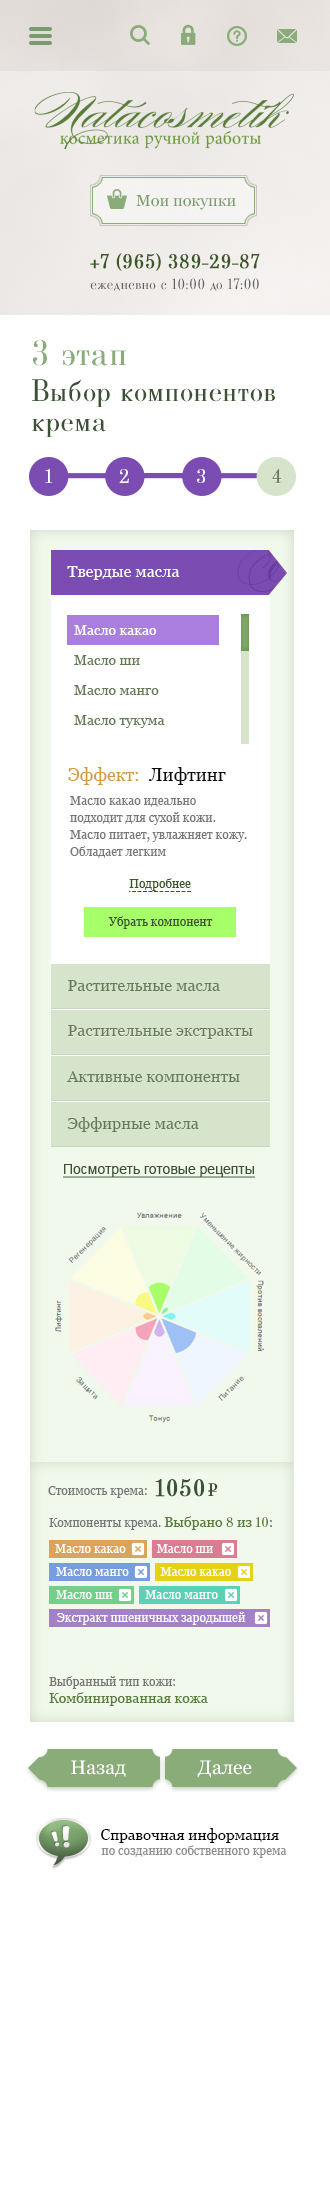 Подбор индивидуального крема в мобильной версии сайта